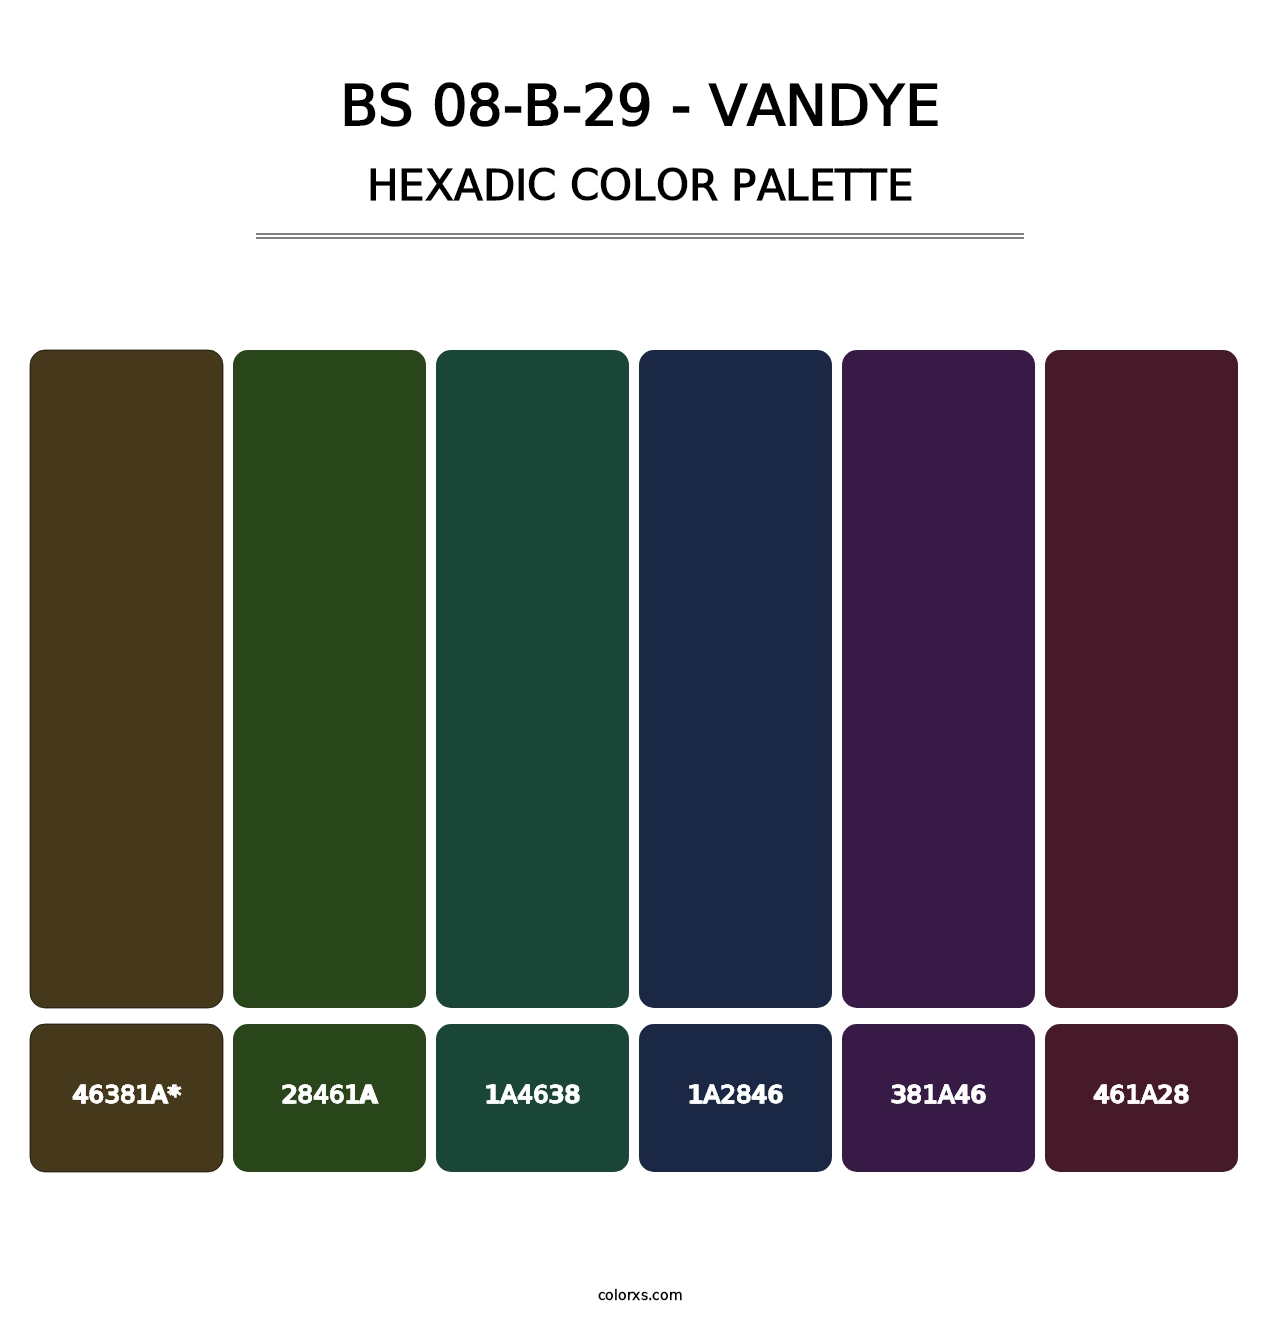 BS 08-B-29 - Vandye - Hexadic Color Palette